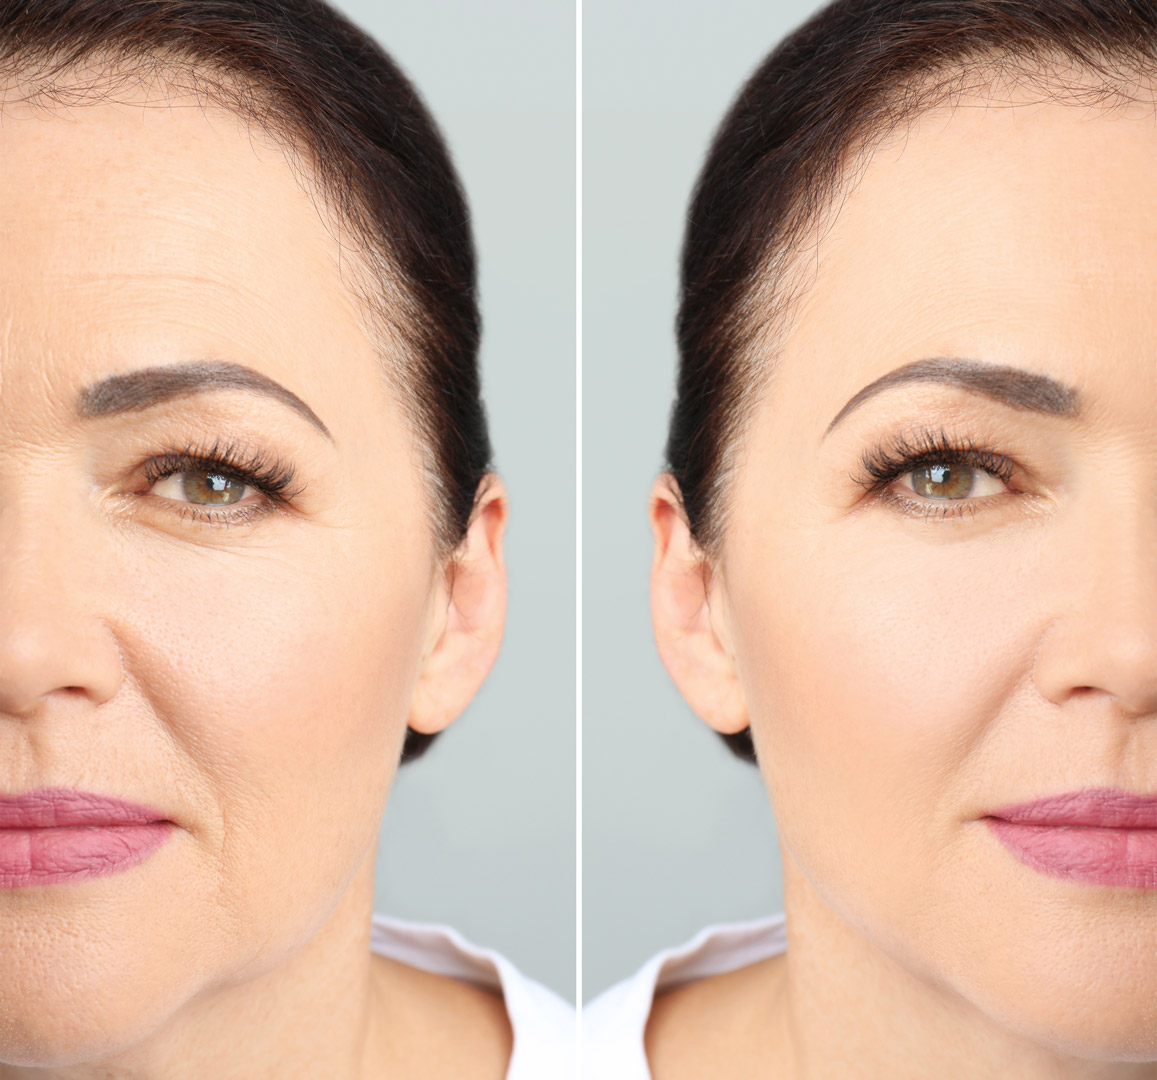 Before & After Blepharoplasty Upper & Lower Eyelid Procedure